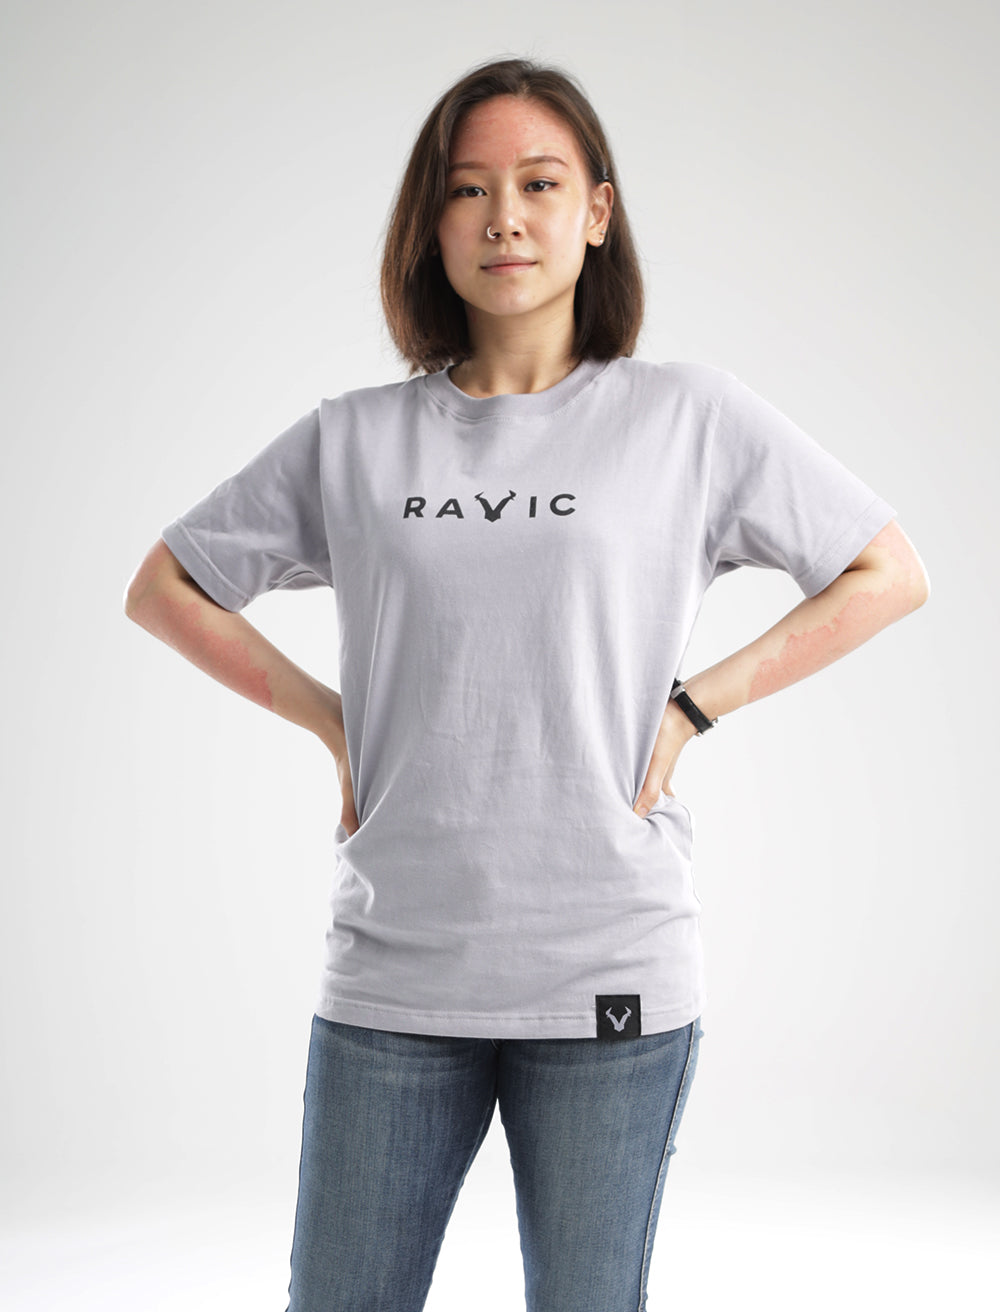 Ravic T-Shirt (Grey)